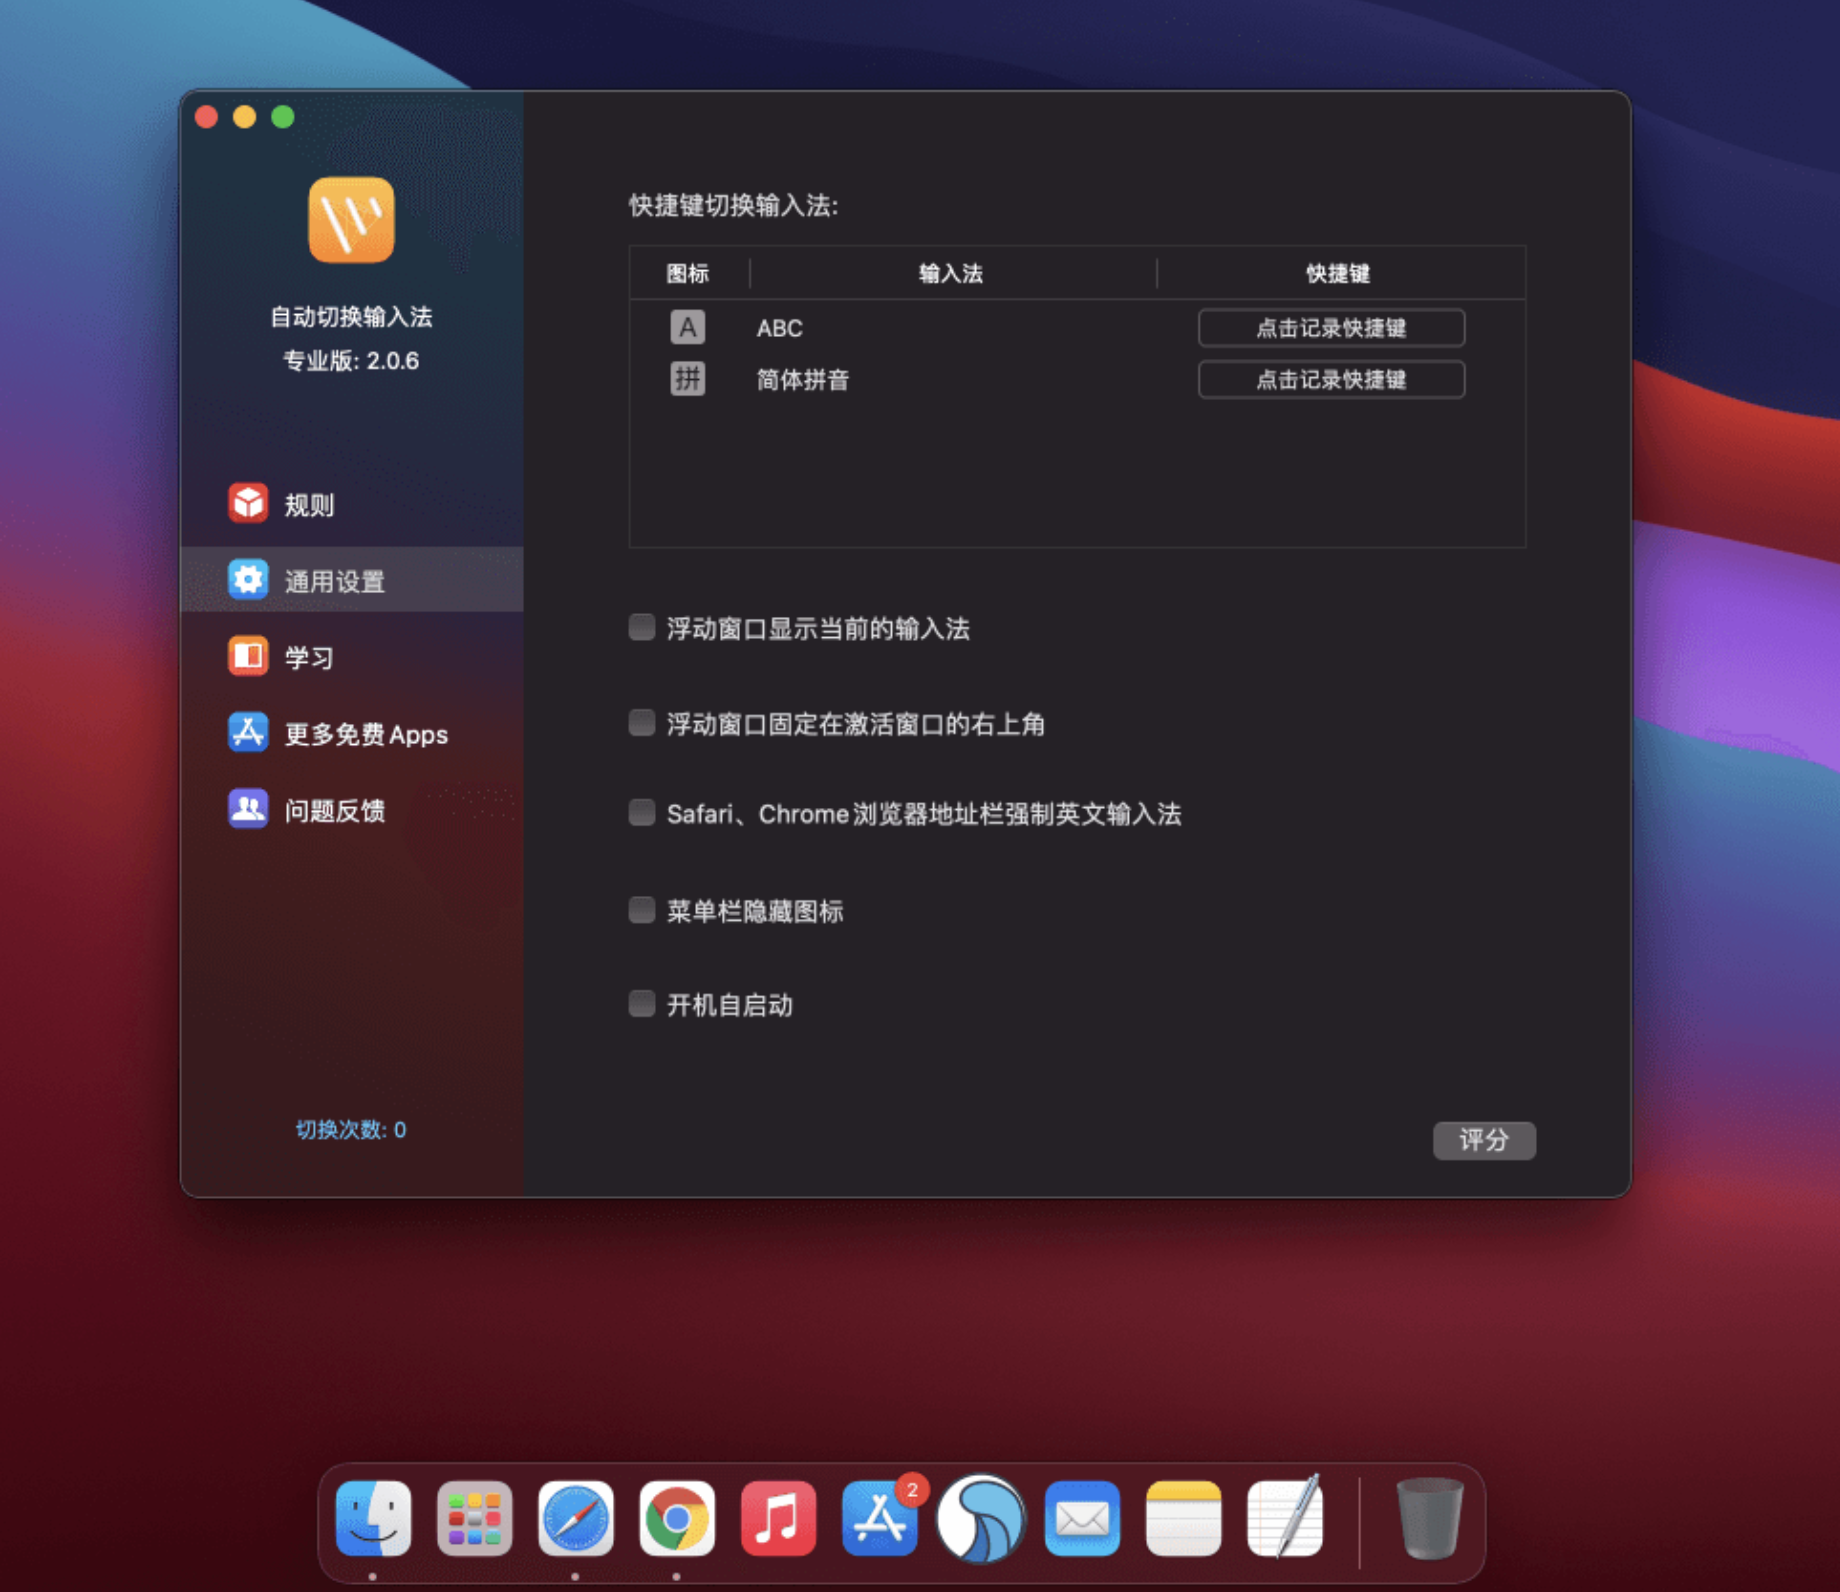 AutoSwitchInput Pro for Mac v2.2.1 中文破解版 自动切换输入法 苹果电脑